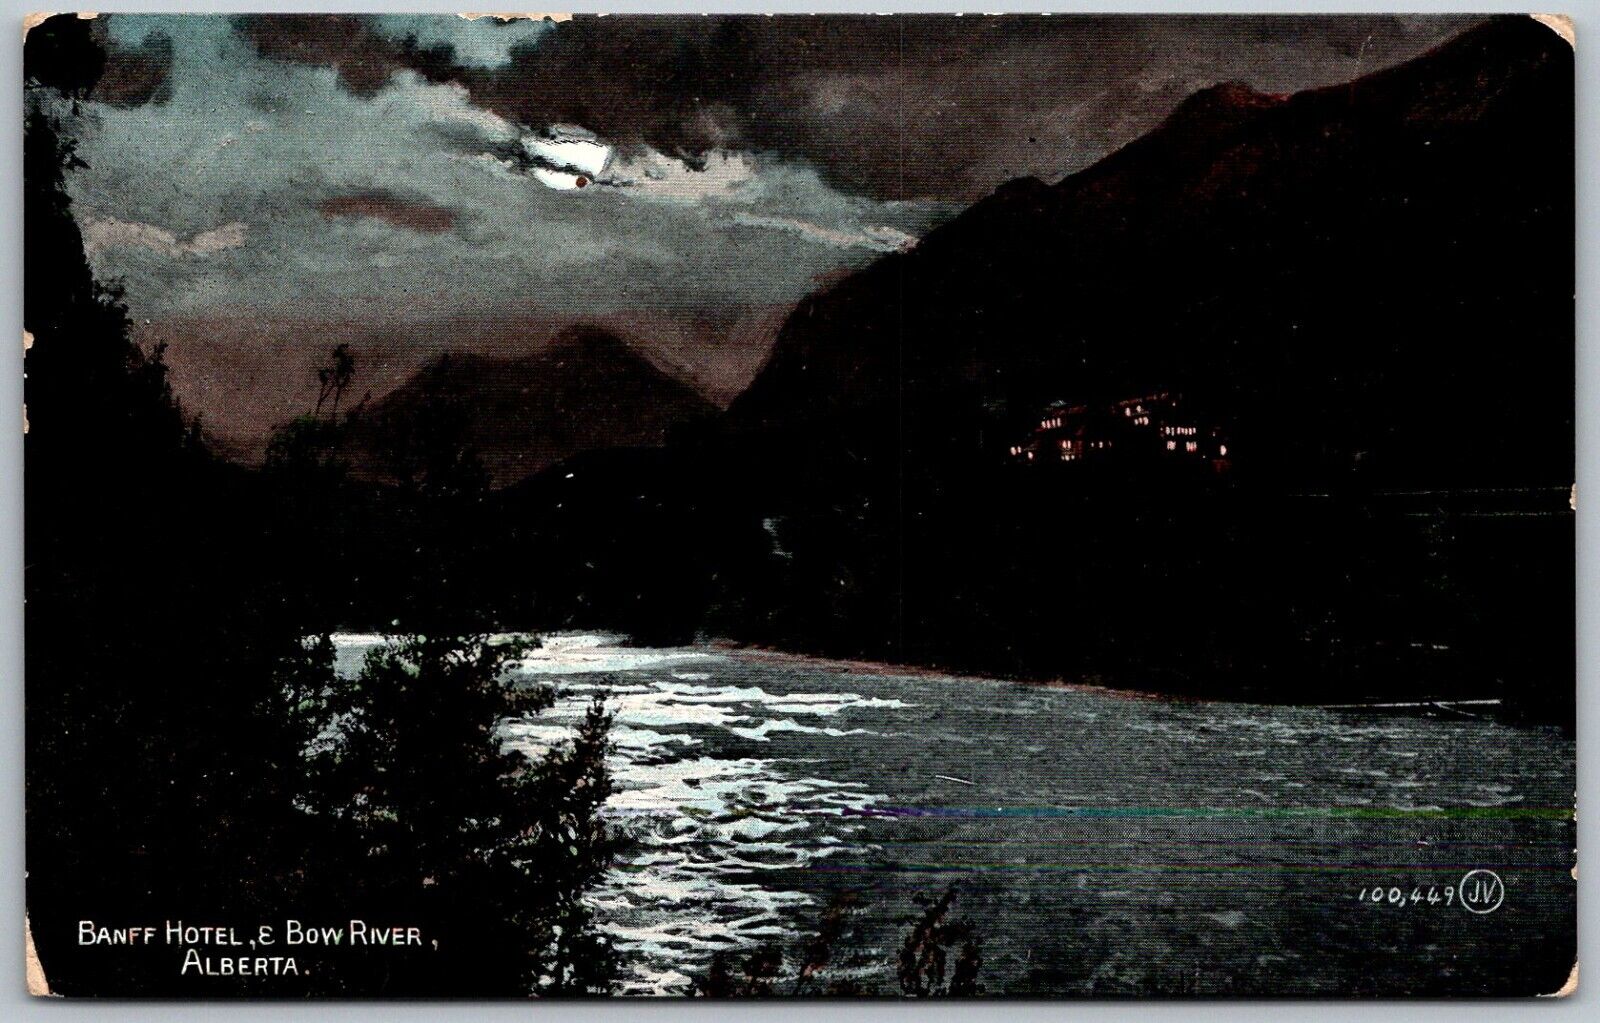 Alberta British Columbia 1908 Postcard Banff Hotel And Bow River at Night Moon